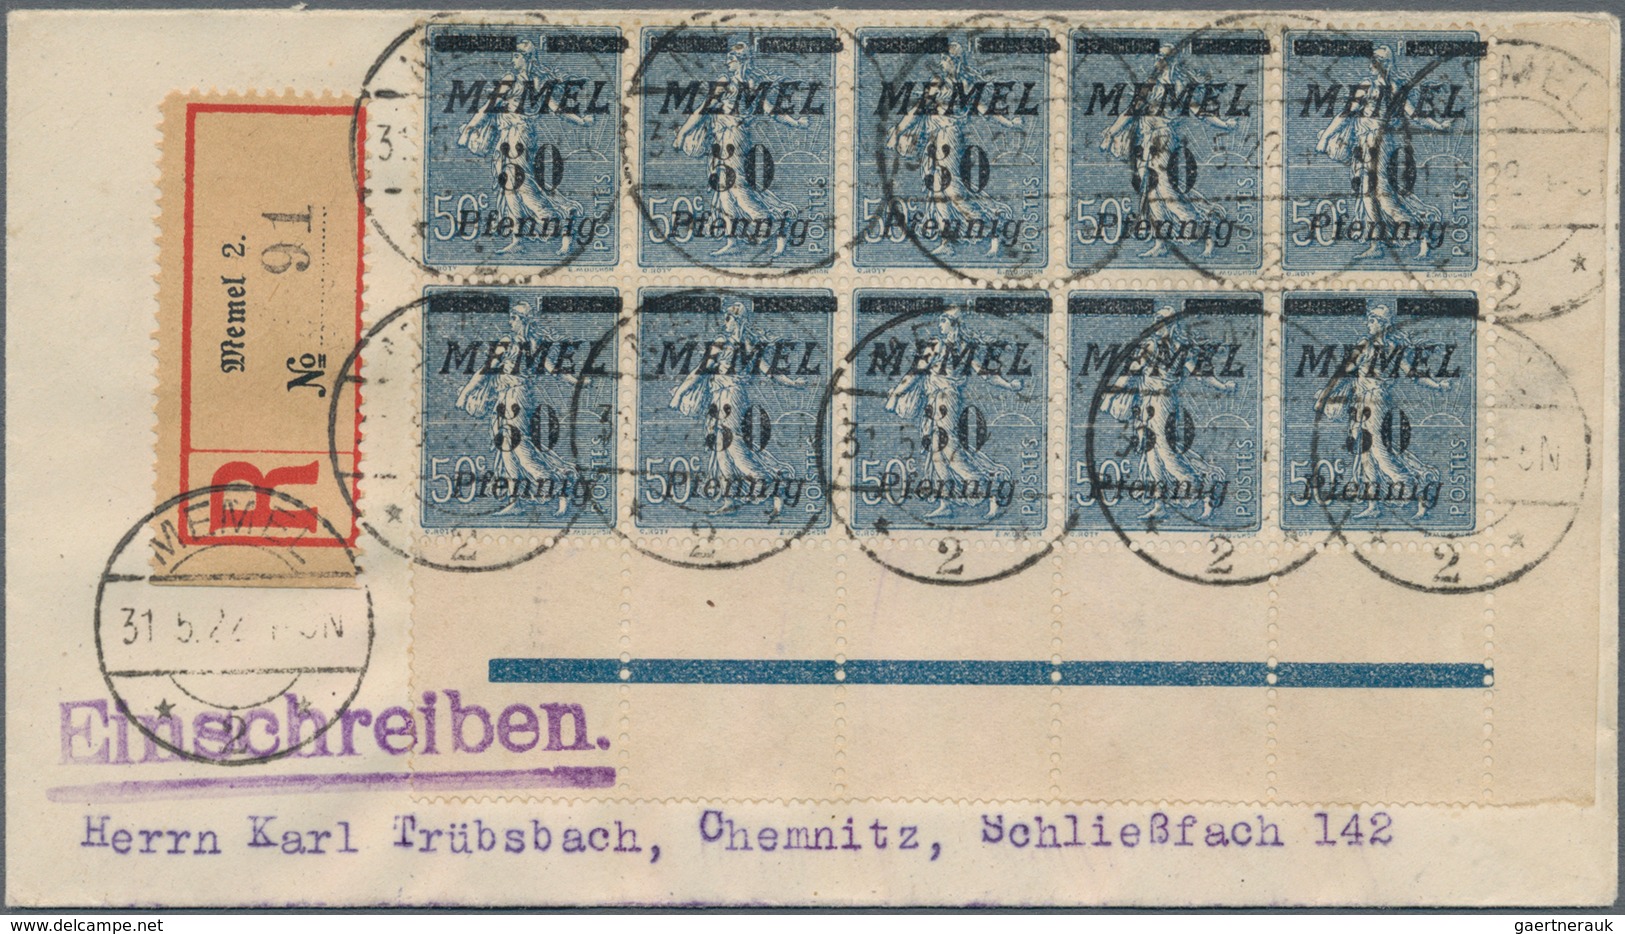 Memel: 1920/1925, umfassende Sammlung von ca. 1.020 Briefen und Karten, durchgehend gut besetzt bis